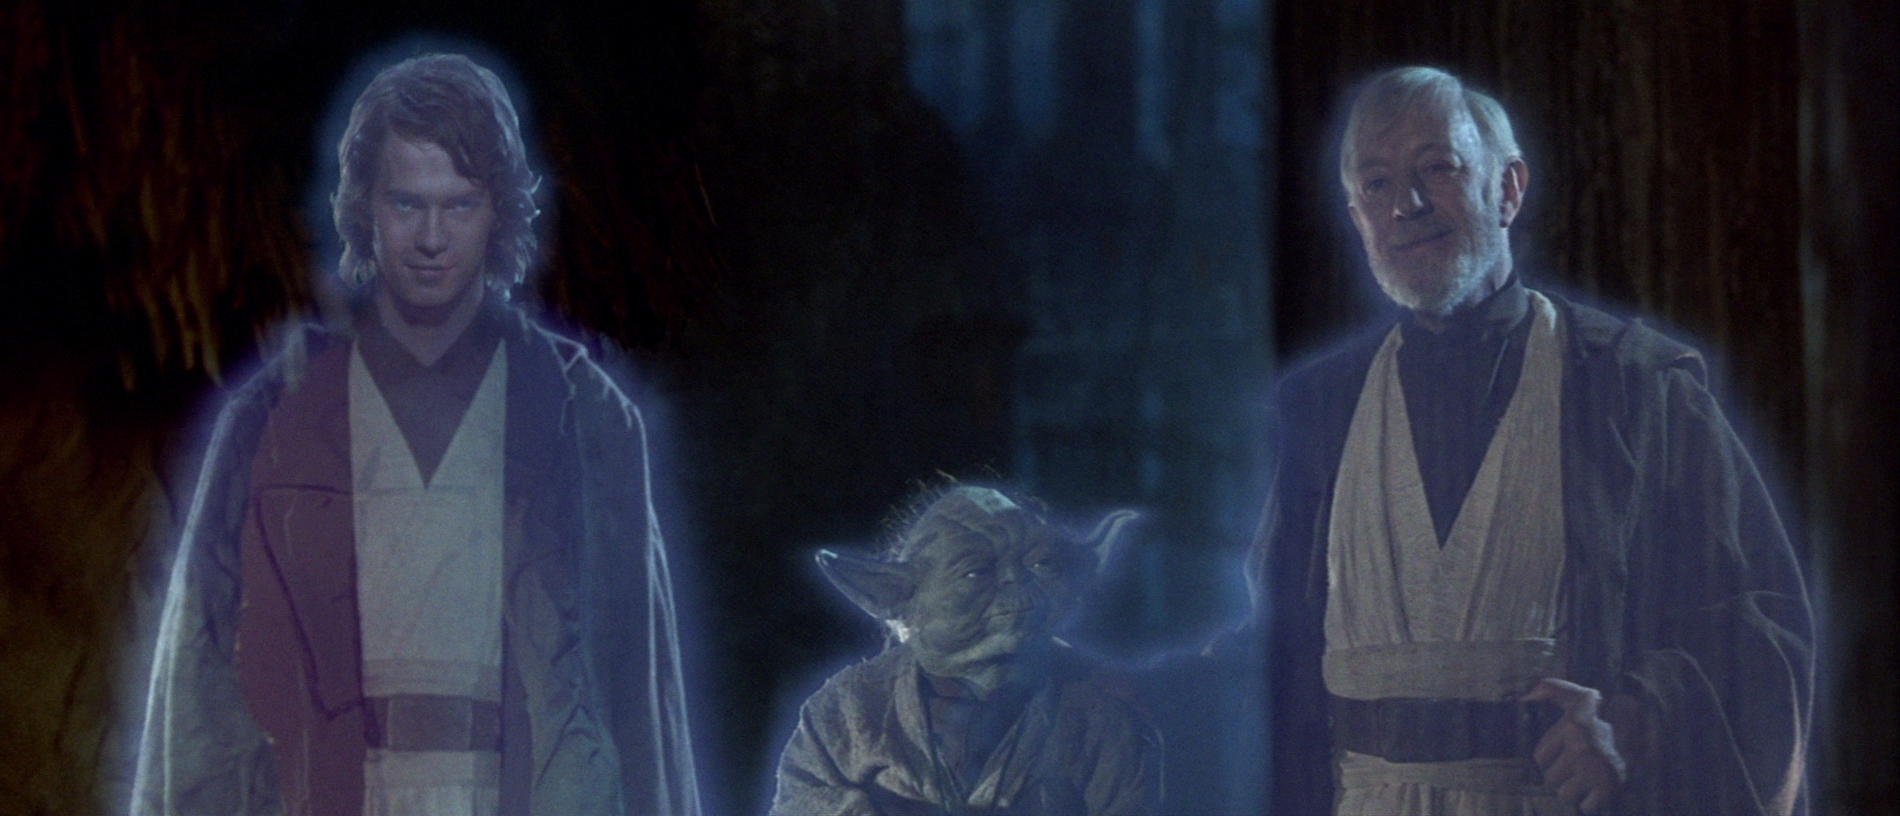 Hayden Christensen in Return of the Jedi